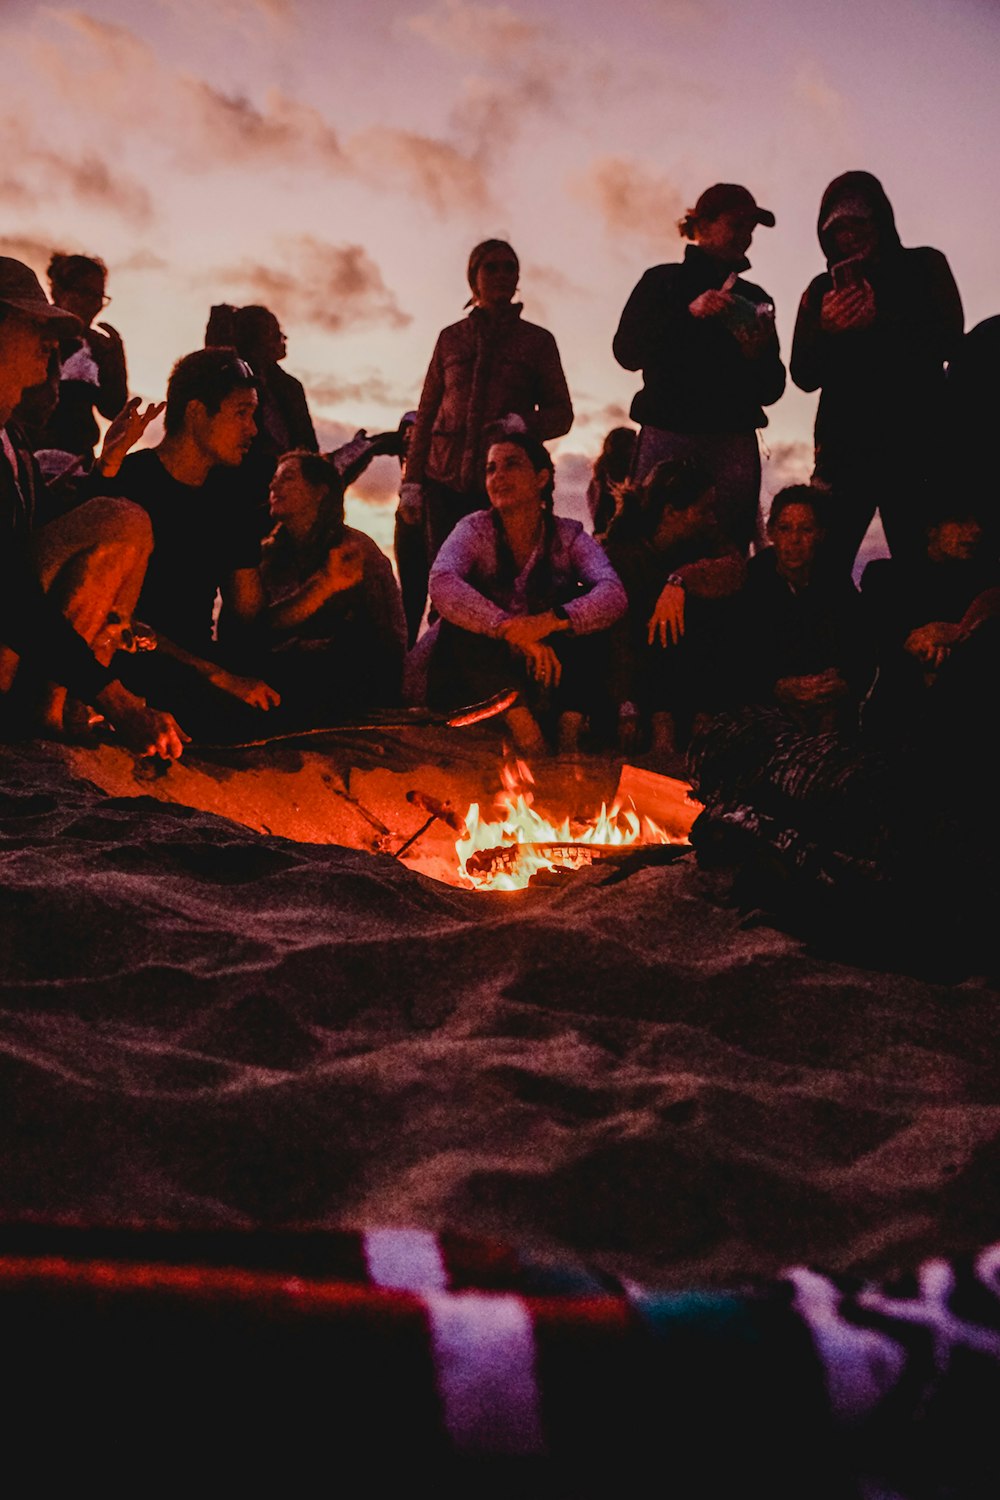 Menschen, die nachts auf braunem Sand in der Nähe von Lagerfeuern sitzen